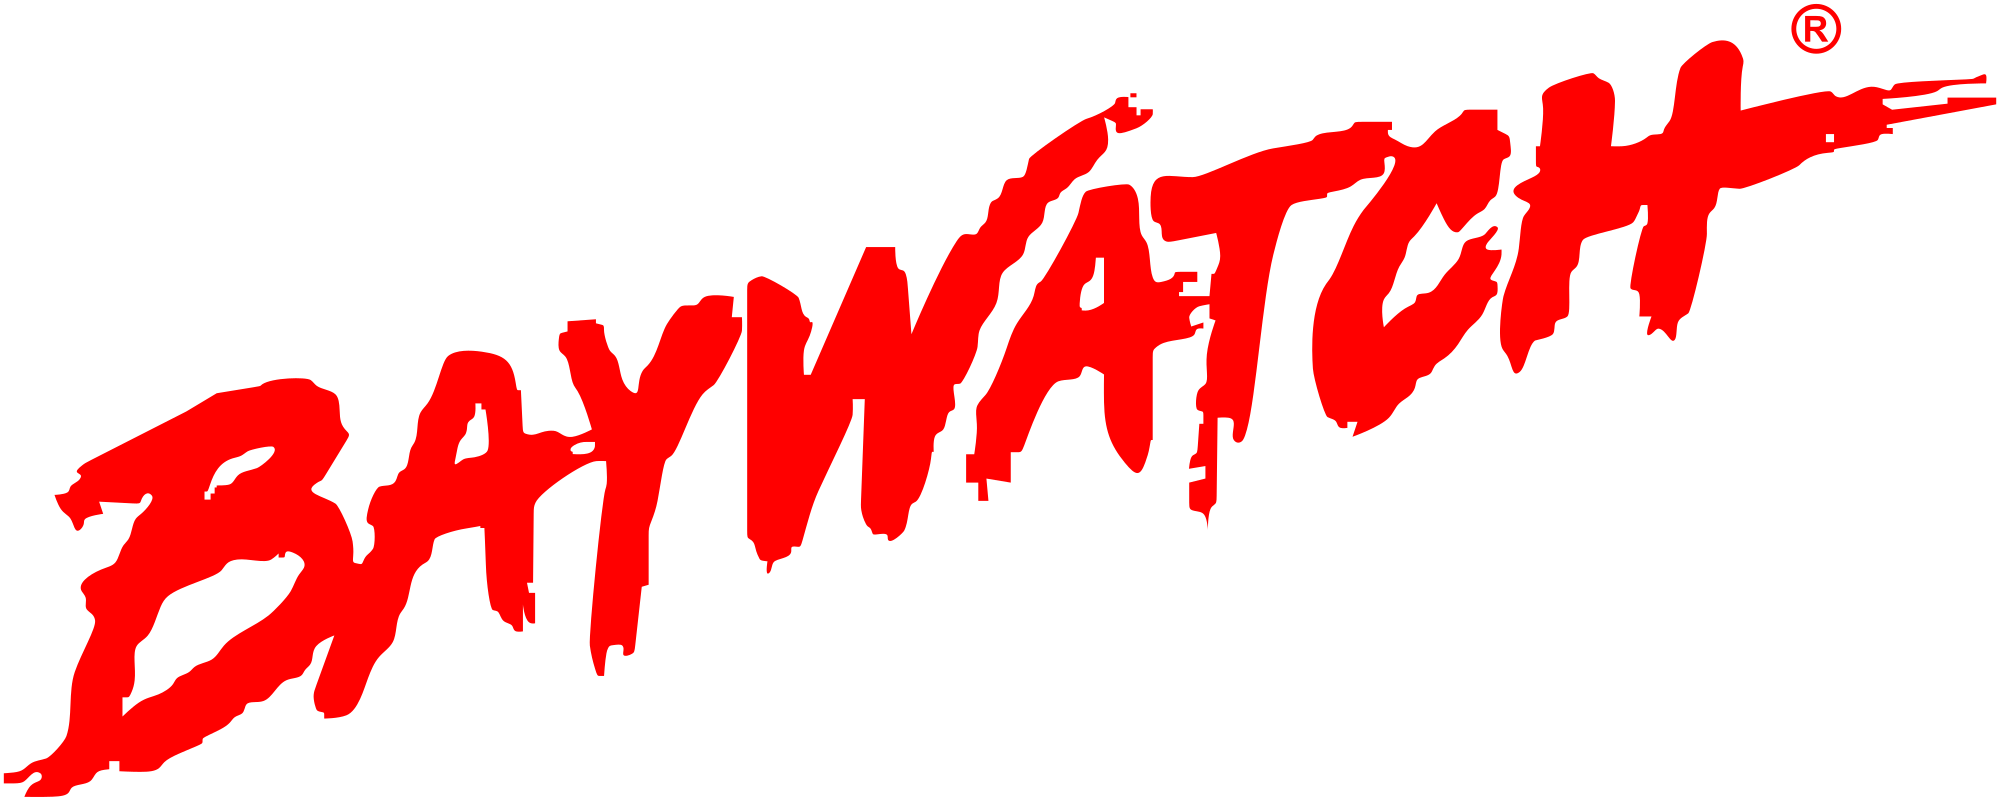 Lifeguard clipart svg. File baywatch logo wikimedia